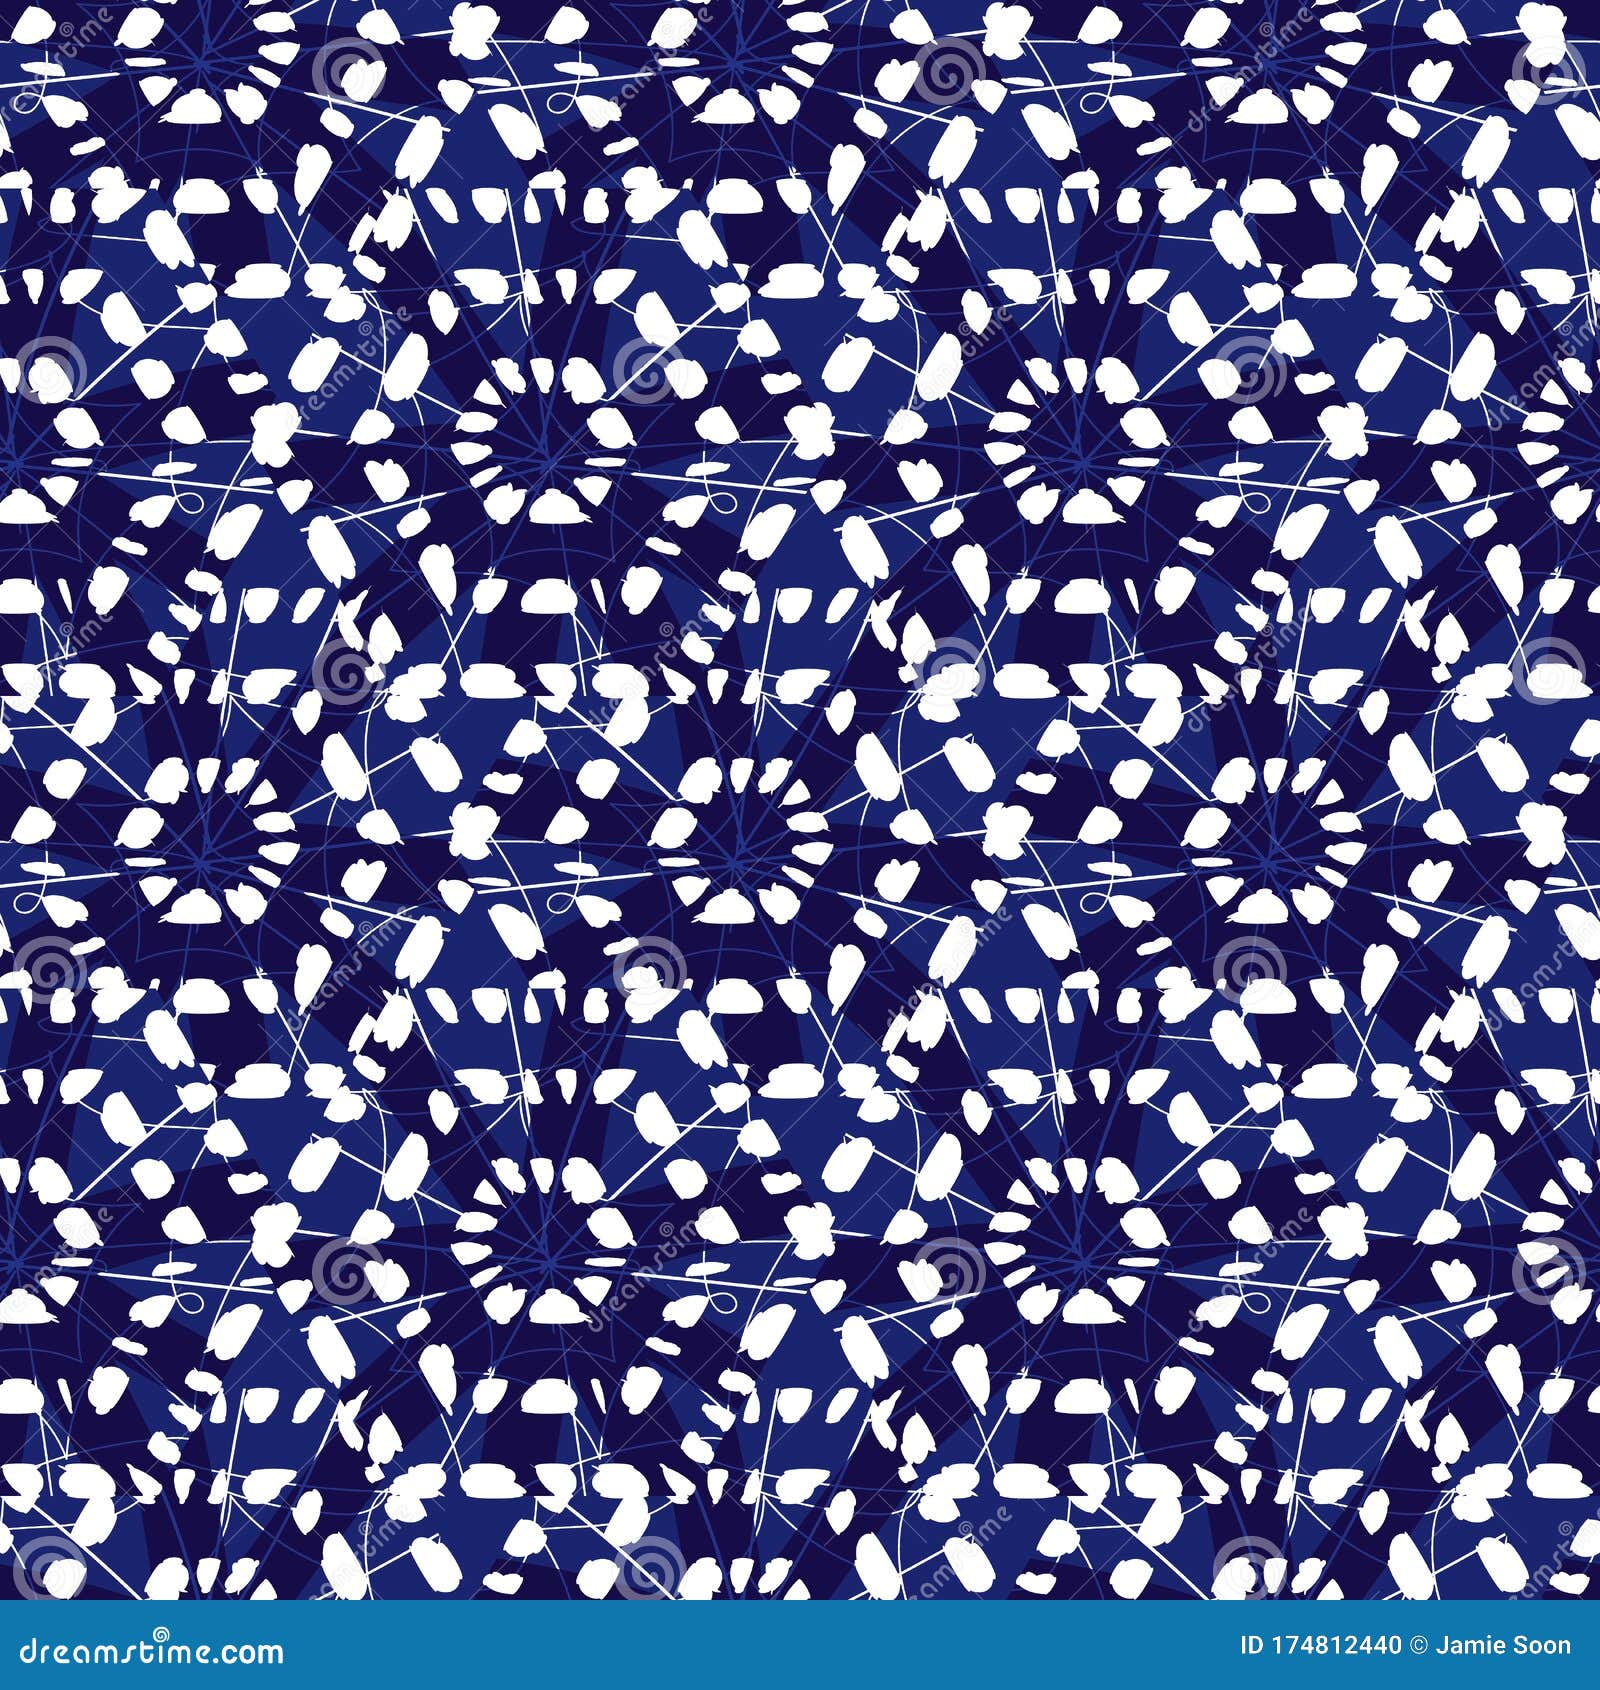 矢量蓝斑蓝单色密六边形无缝图案适用于纺织品 礼品包装和壁纸向量例证 插画包括有适用于纺织品 礼品包装和壁纸 矢量蓝斑蓝单色密六边形无缝图案 174812440